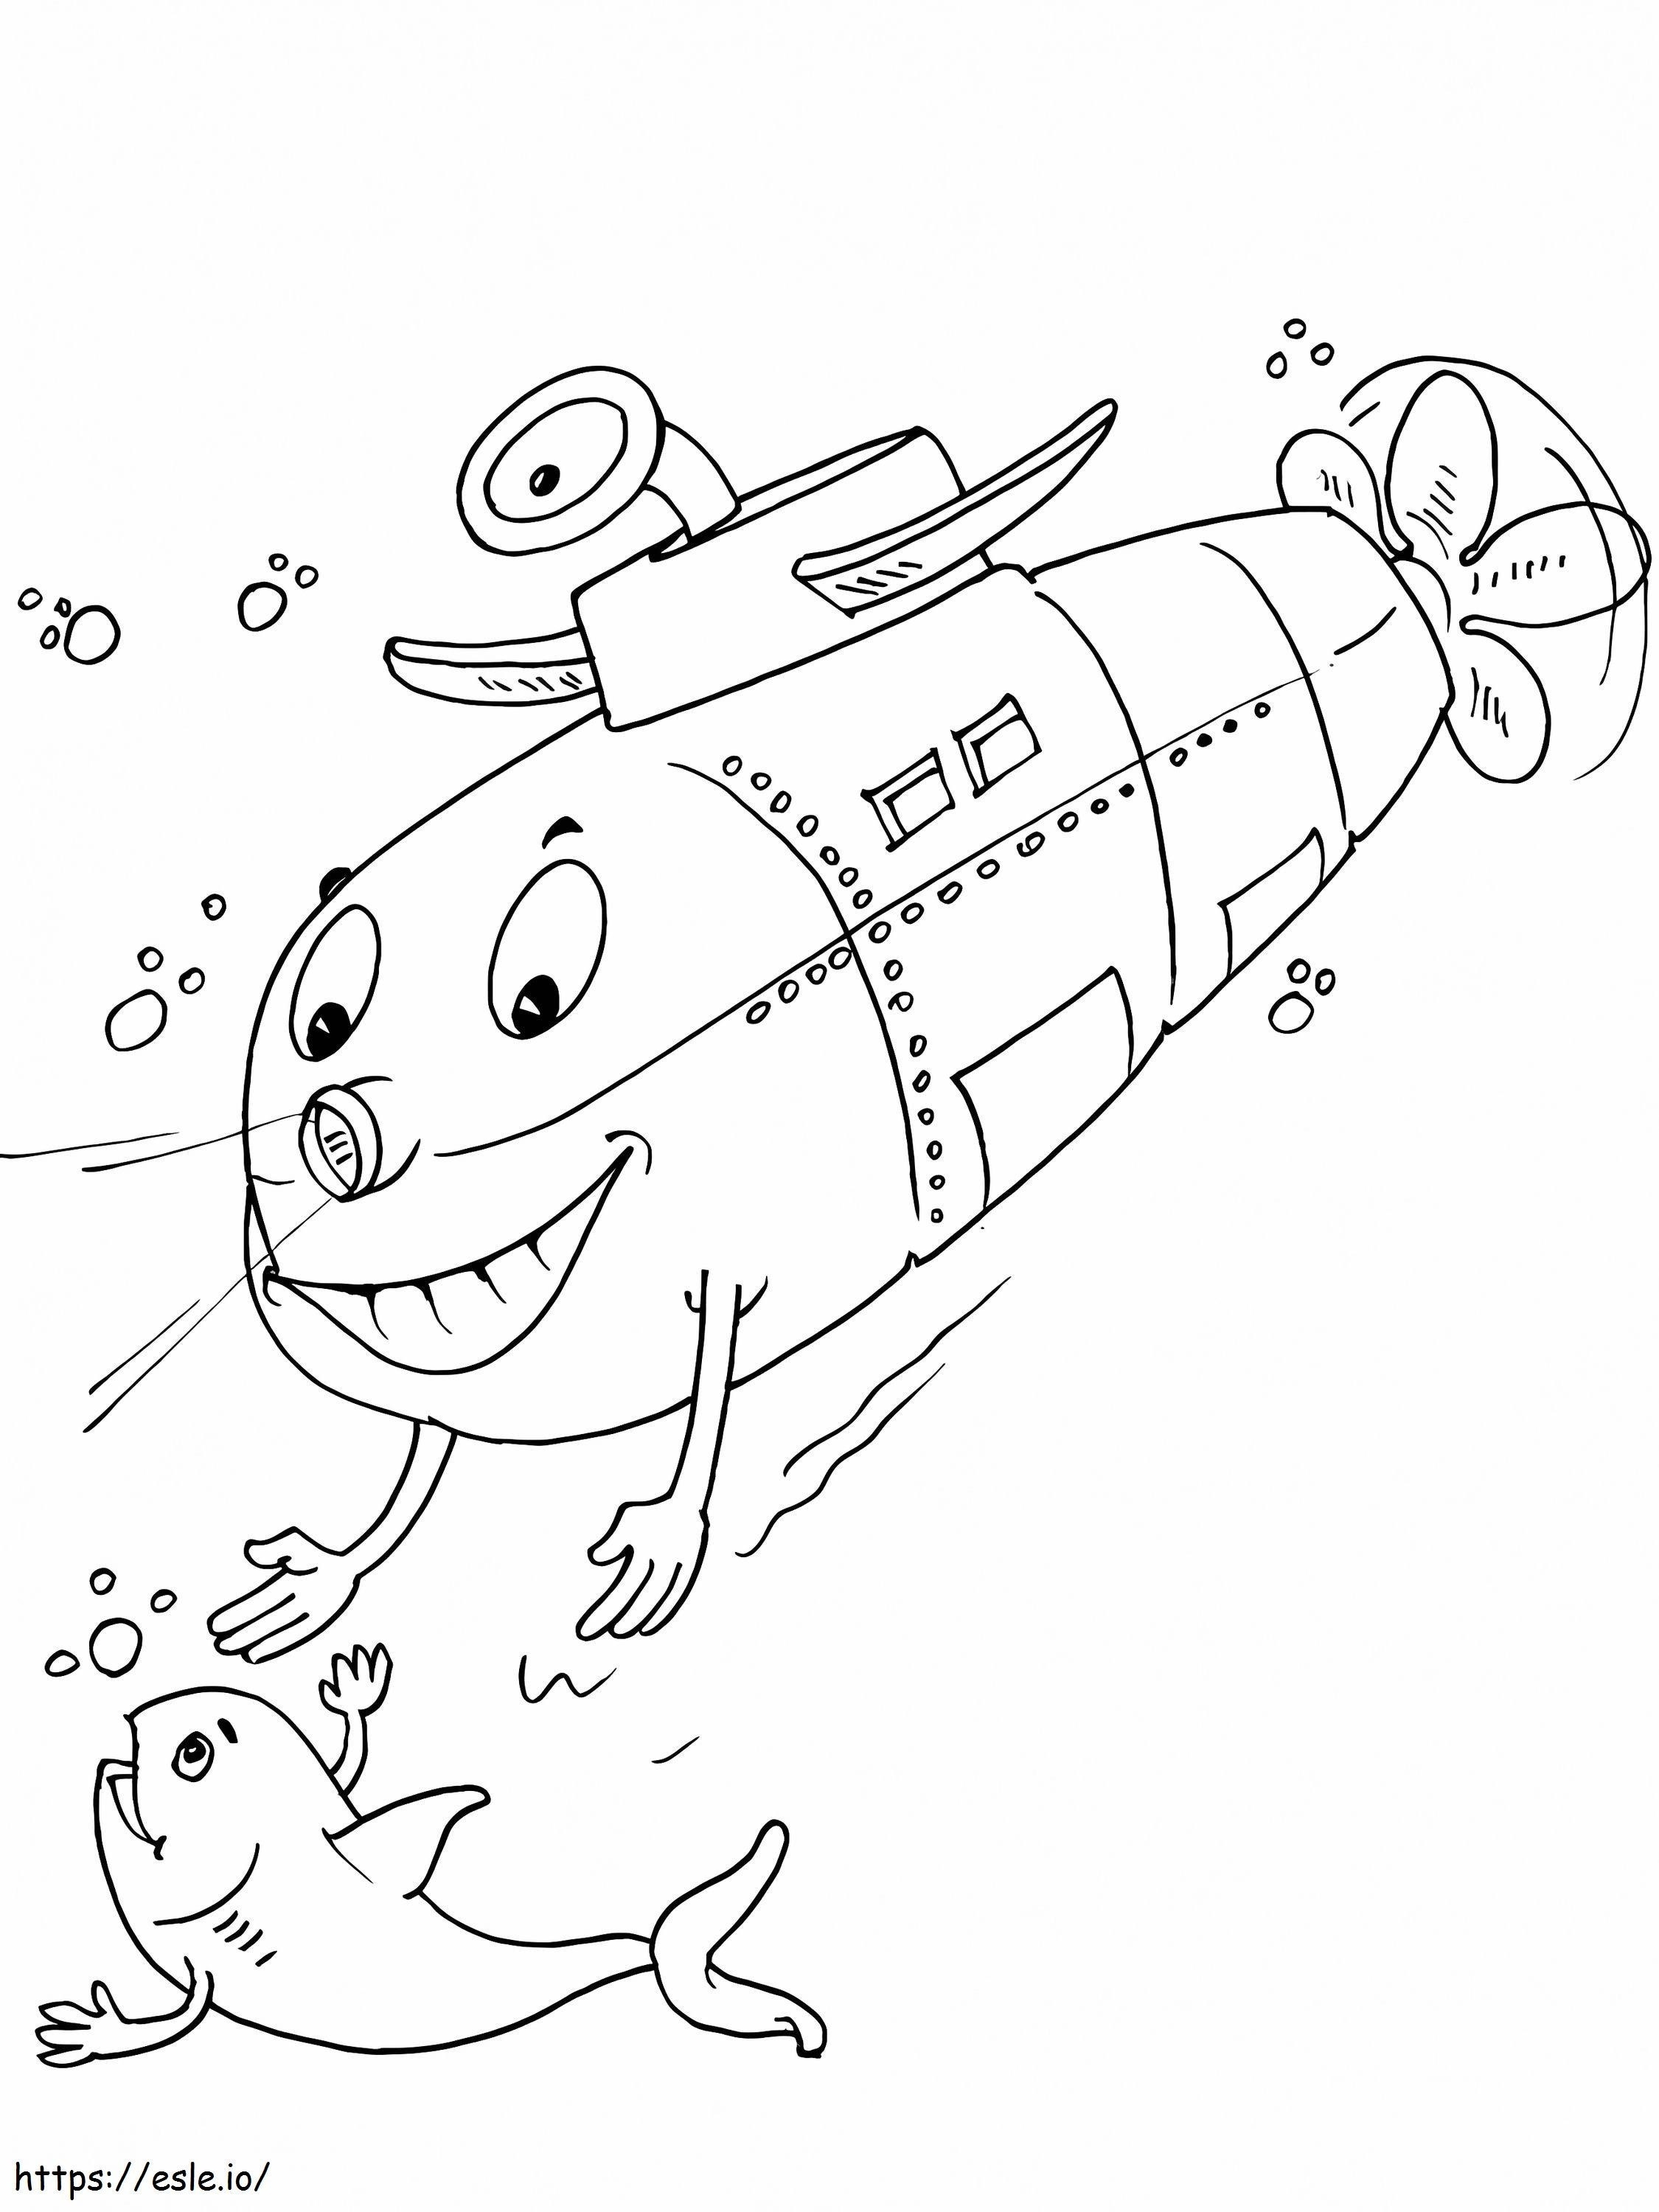 Okręt podwodny i życie podwodne kolorowanka